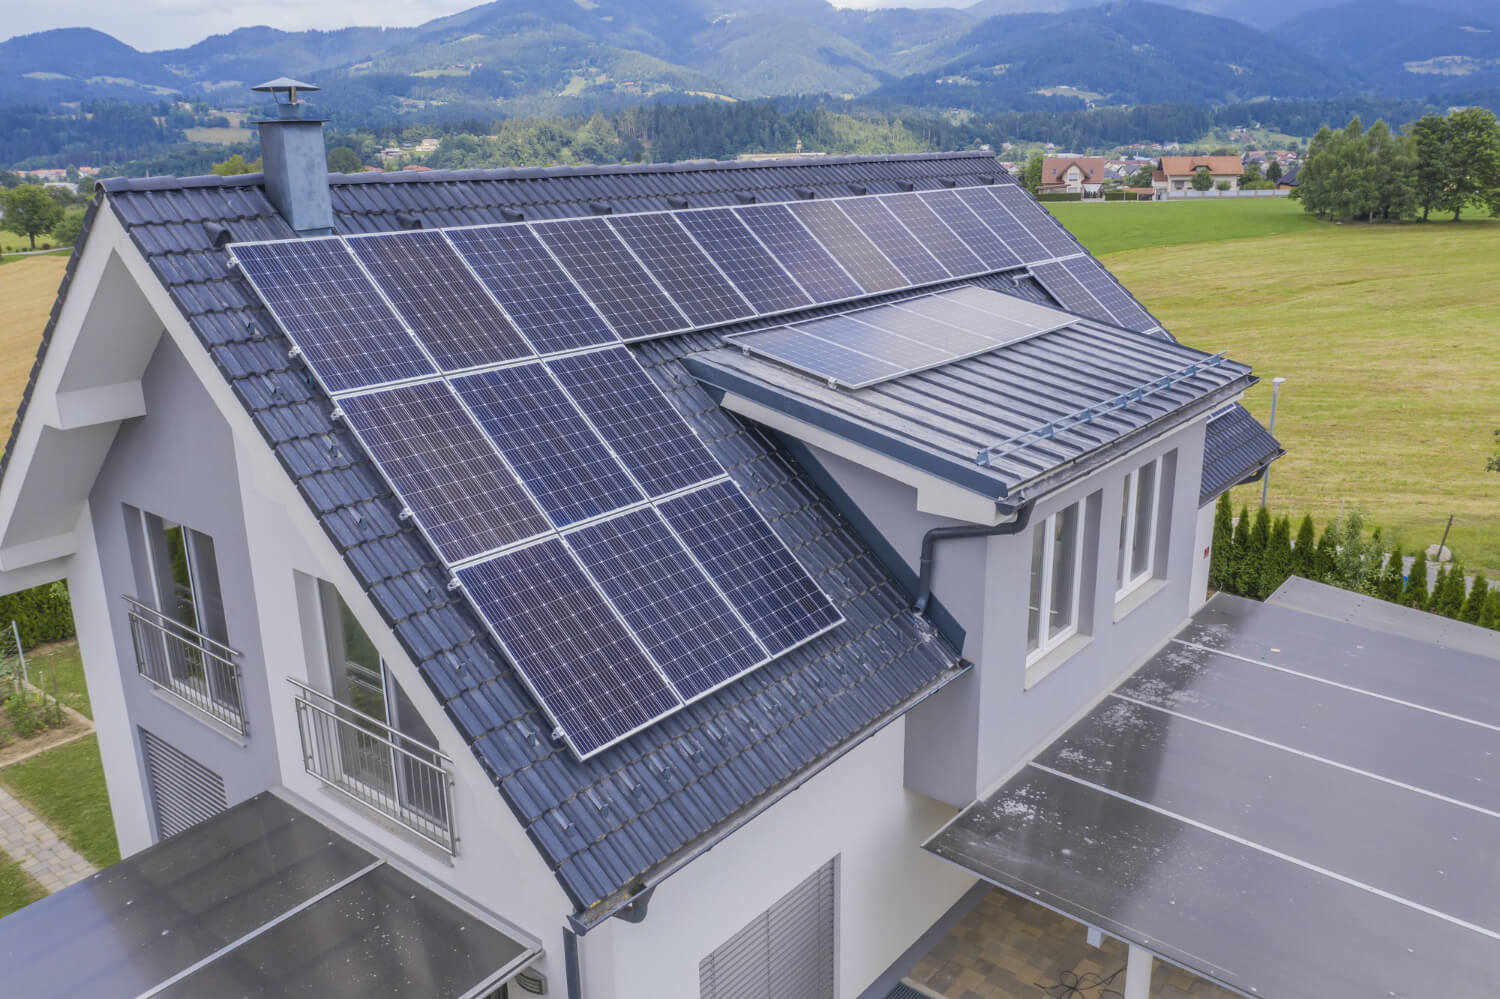  Combien de panneaux solaires faut-il pour alimenter une maison autonome ?